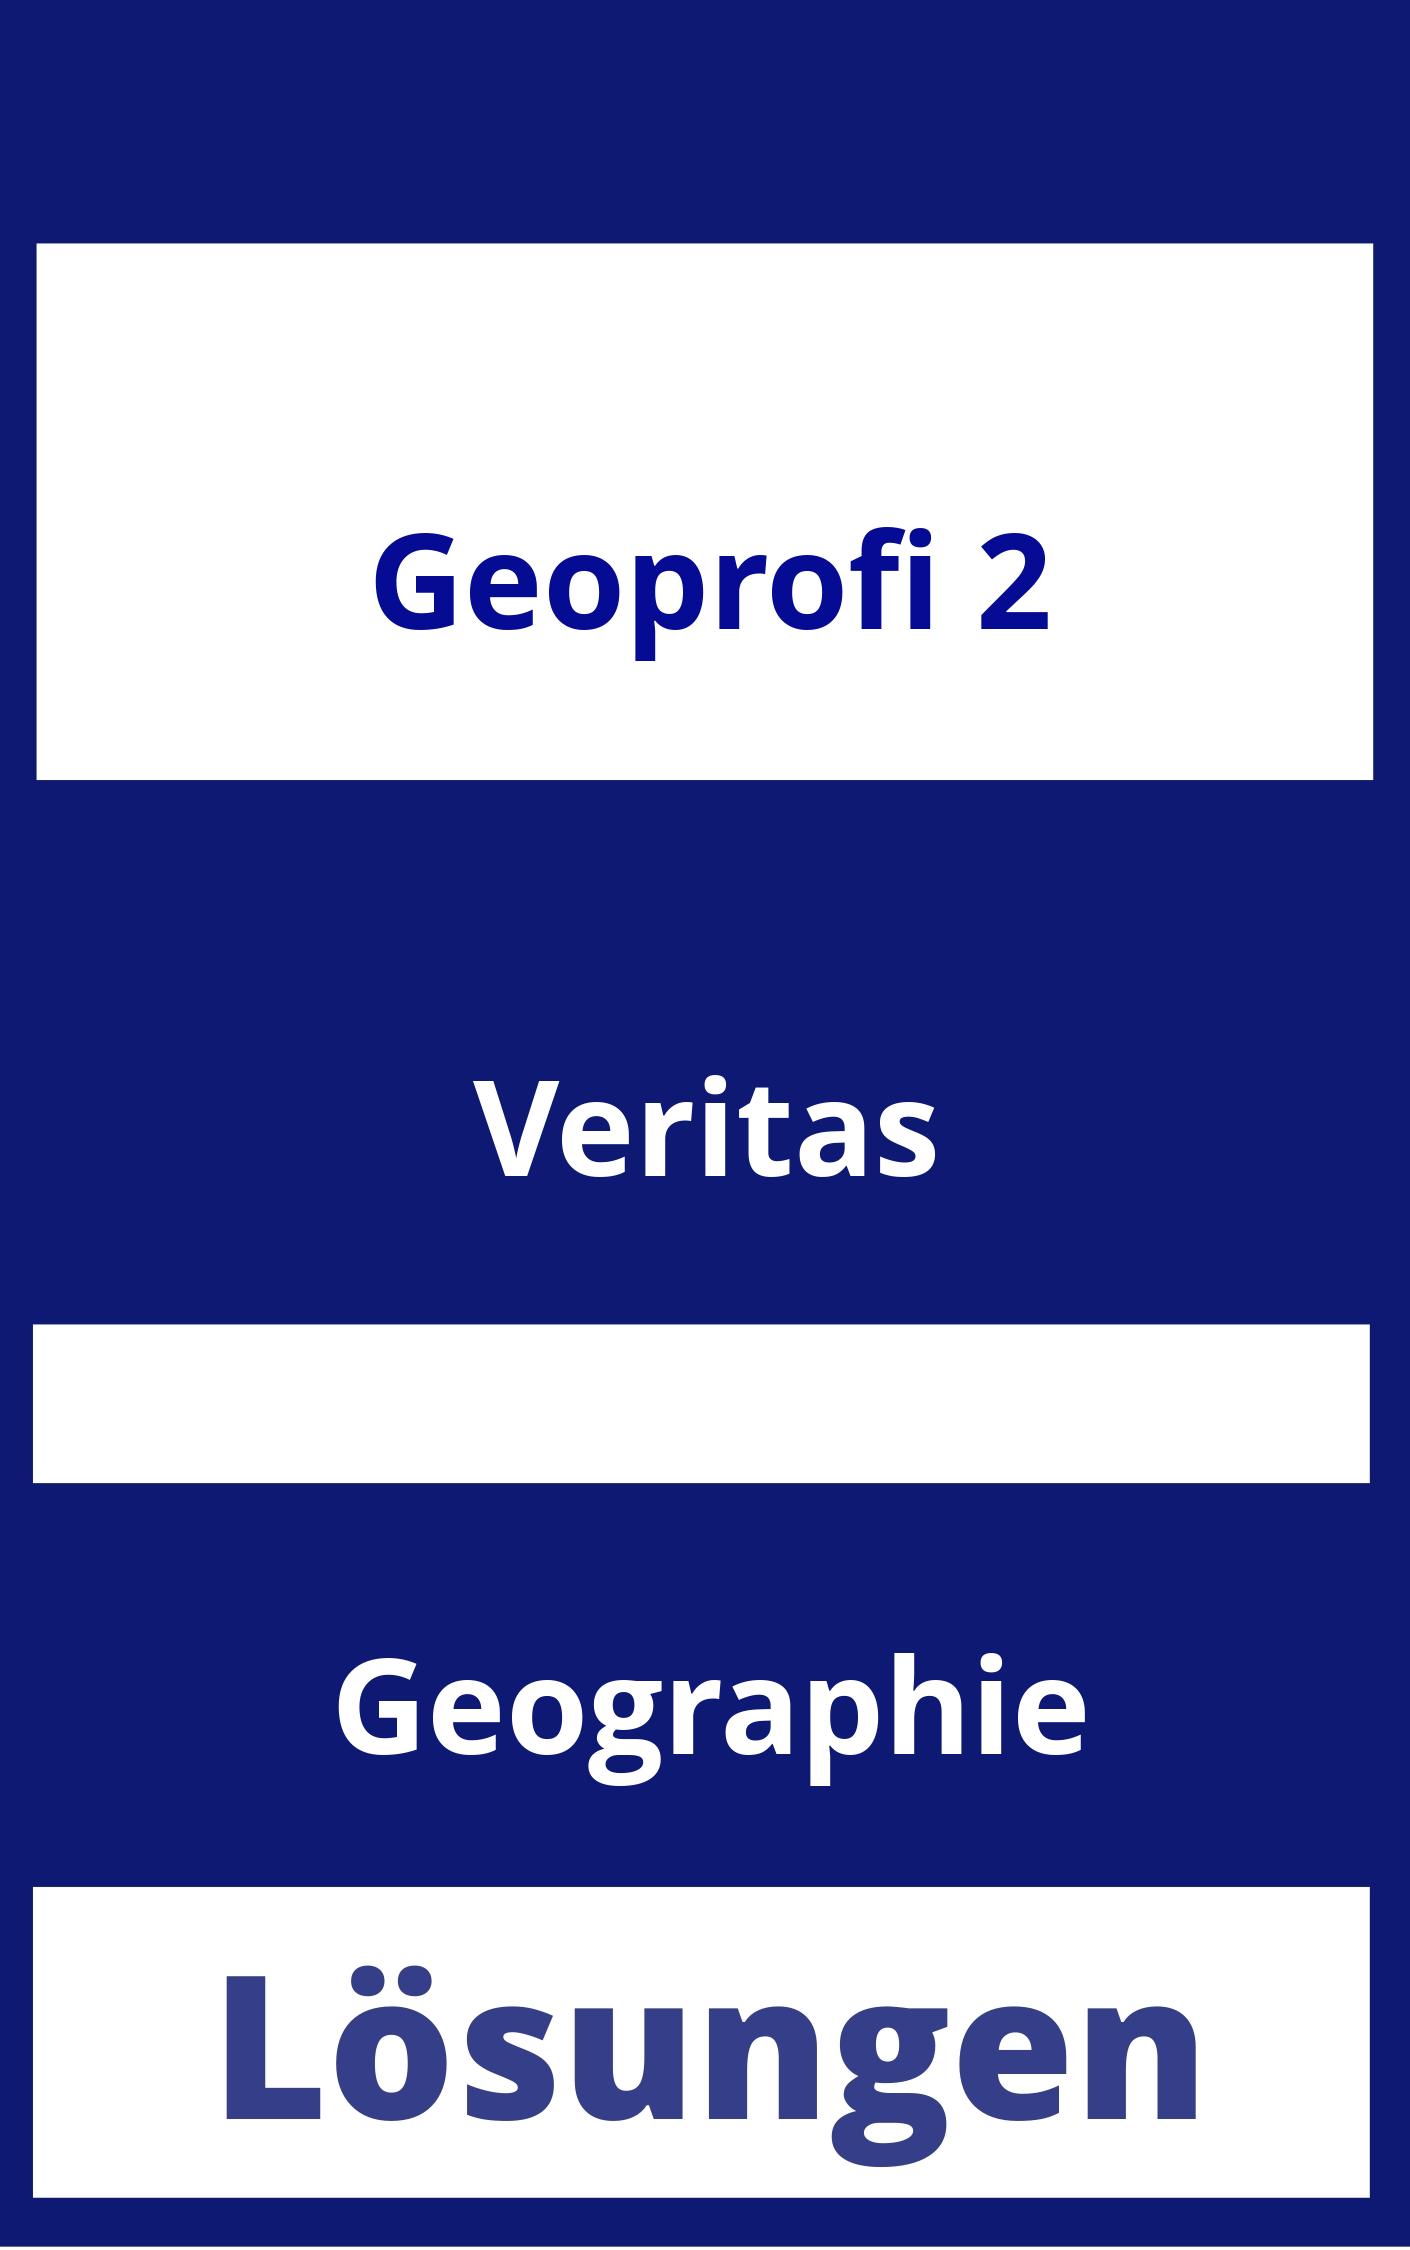 GEOprofi 2